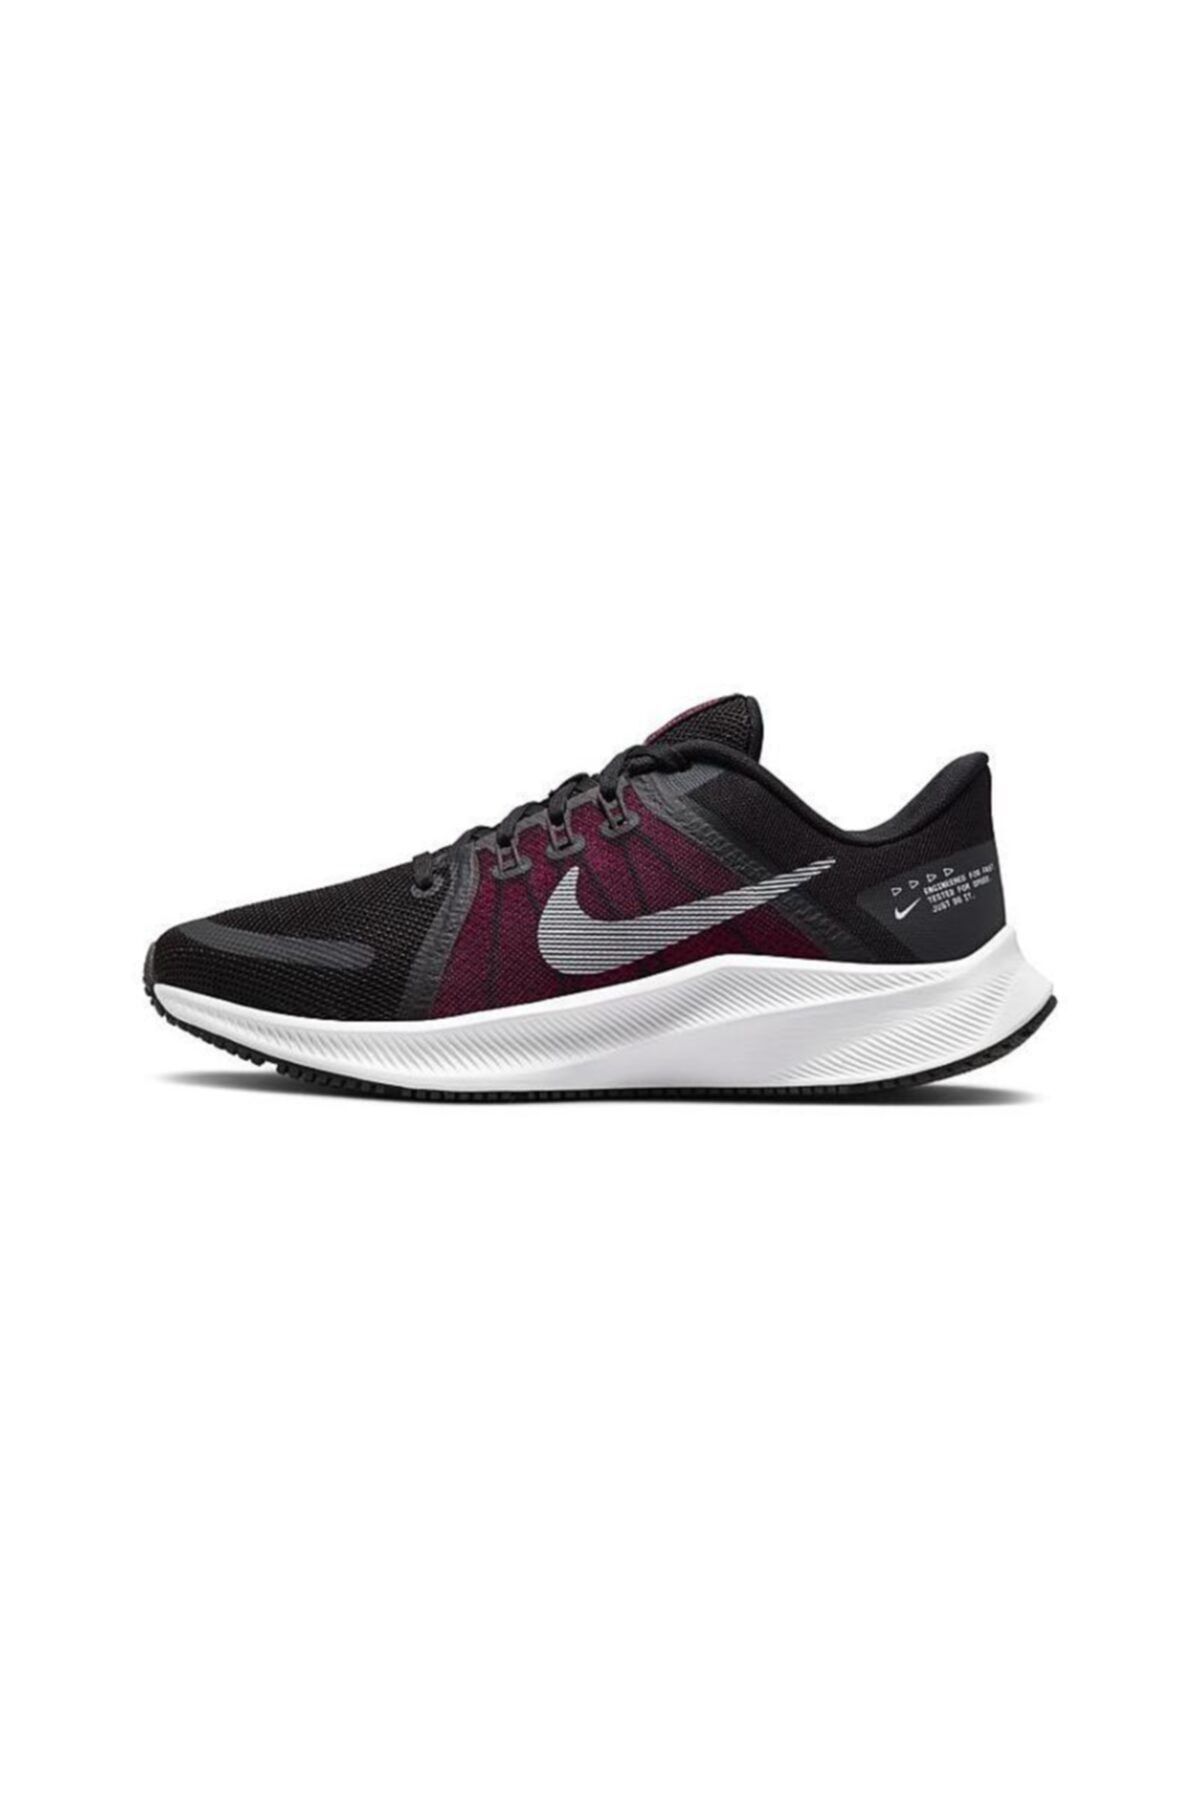 Nike Da1106-001 Wmns Quest 4 Kadın Koşu Ayakkabısı